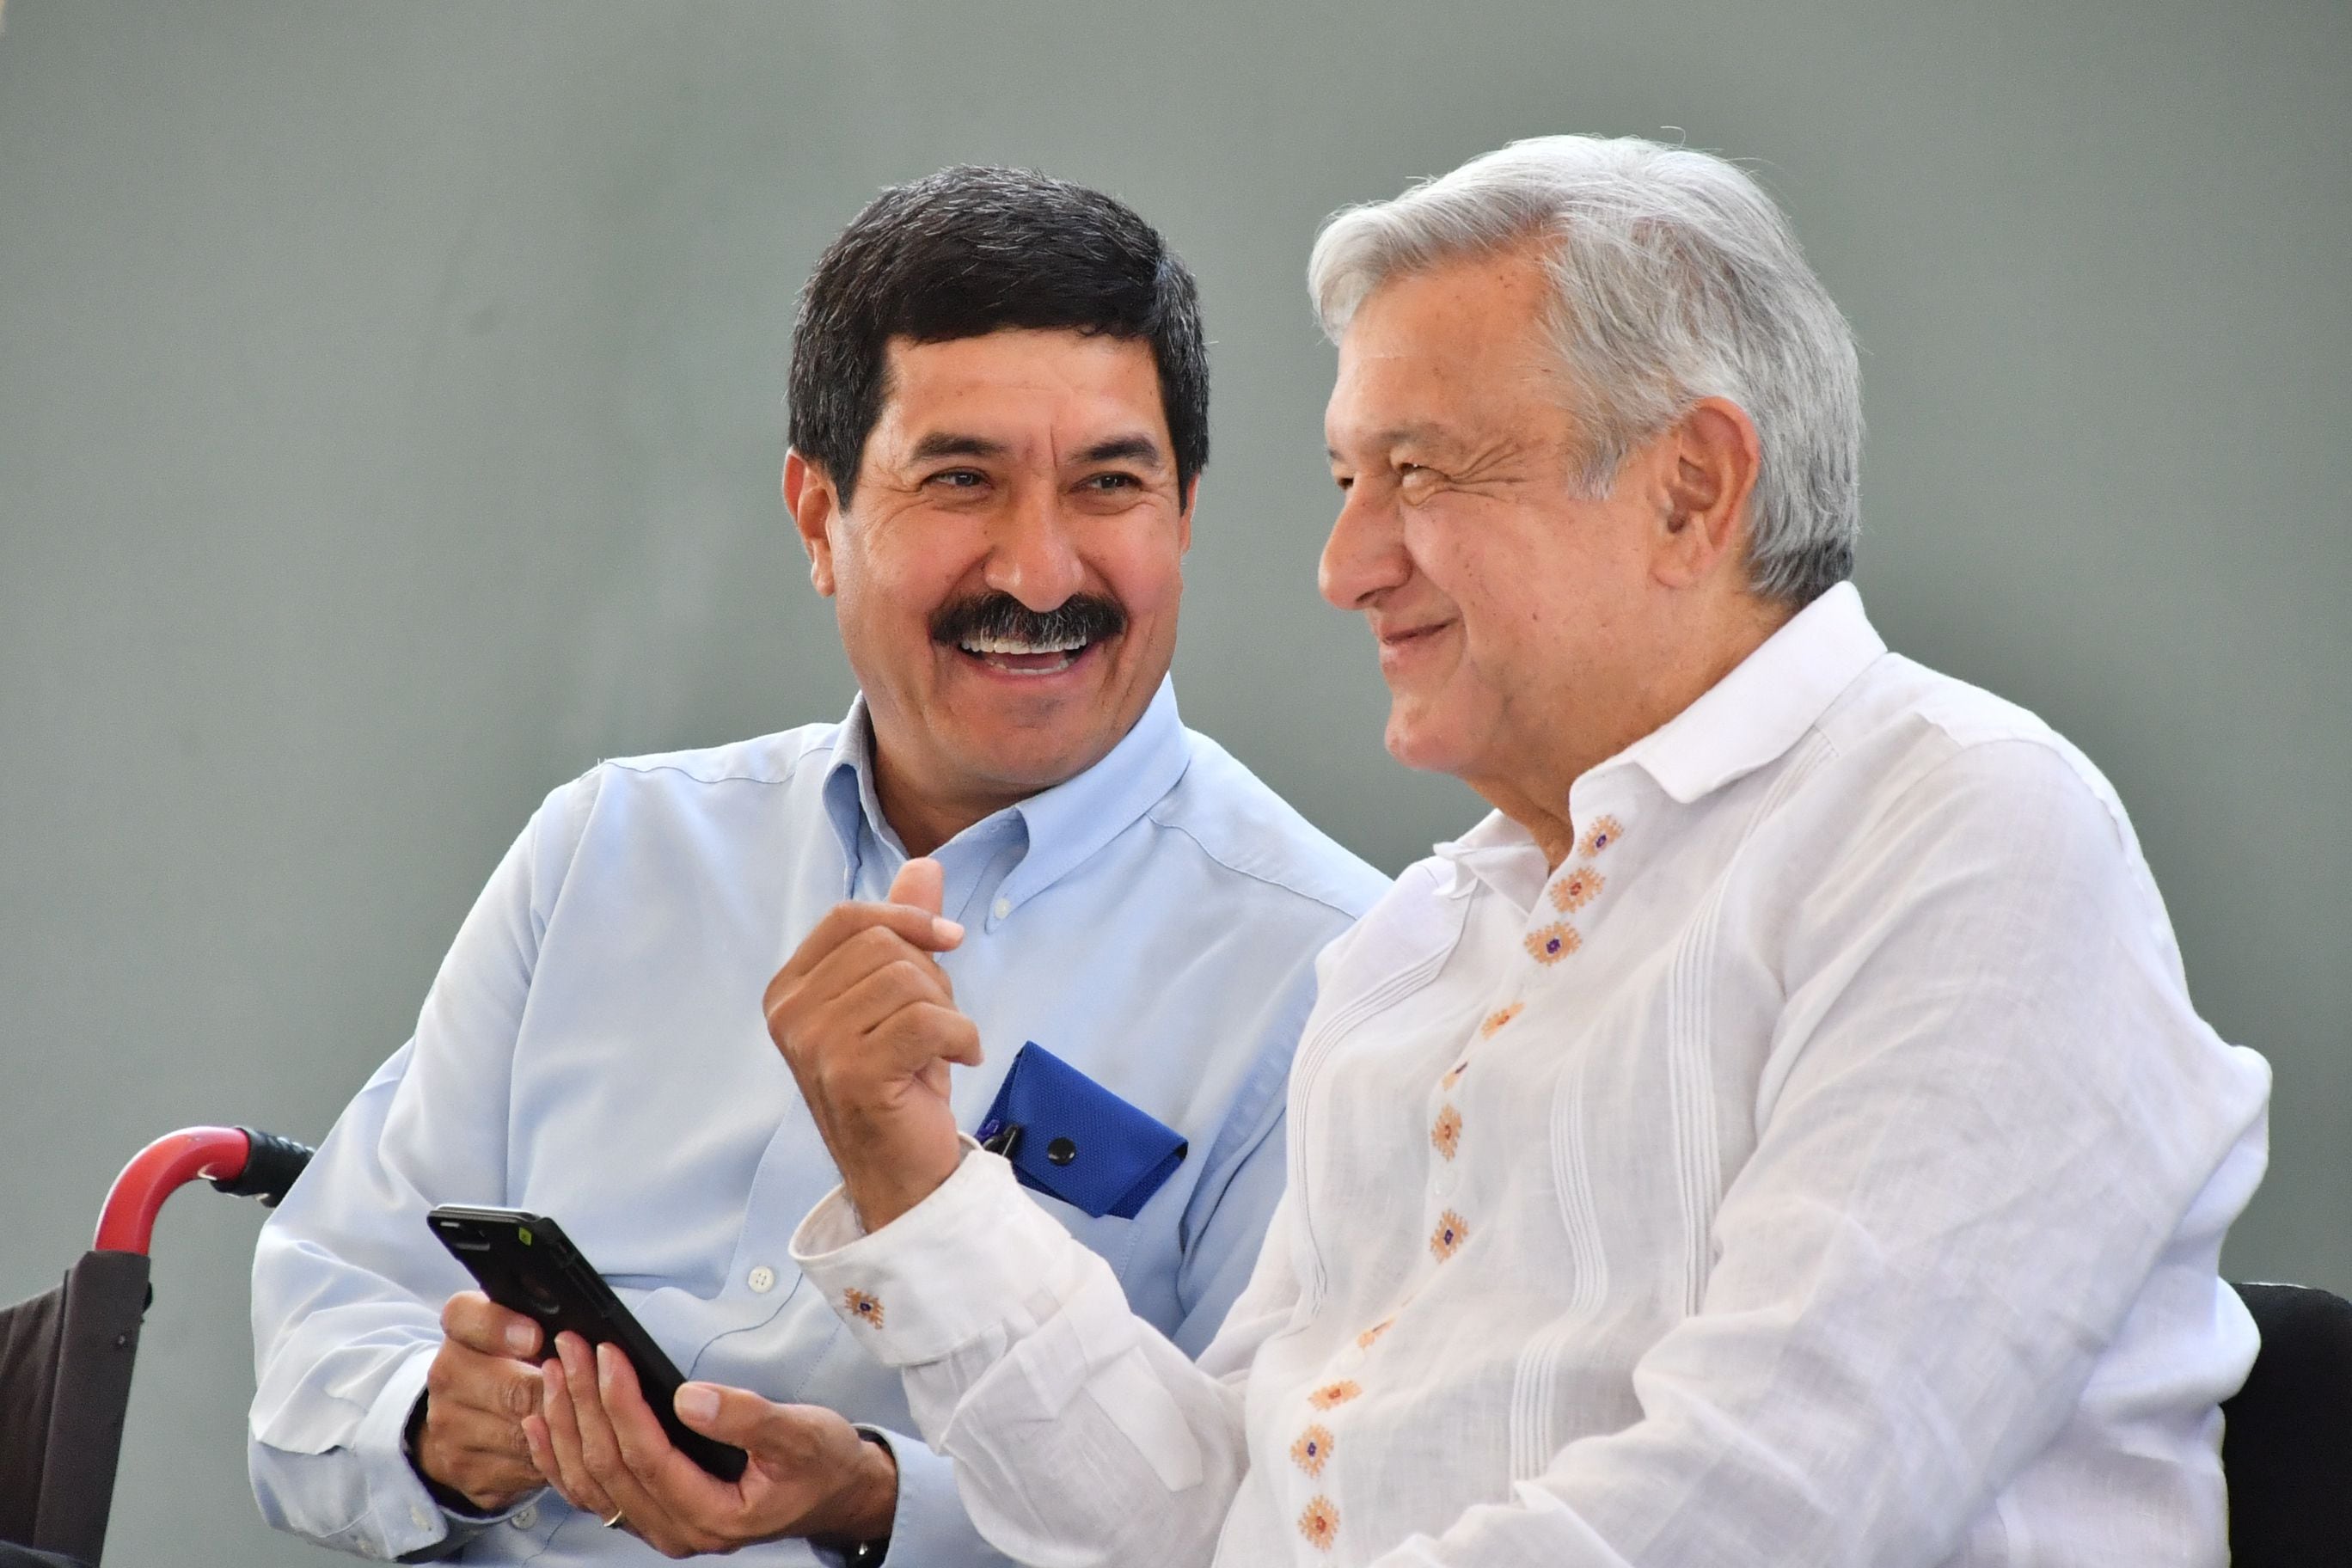 Javier Corral y Andrés Manuel López Obrador (AMLO) han mantenido cierta cercanía a pesar de sus diferencias (Foto: Gobierno de Chihuahua)